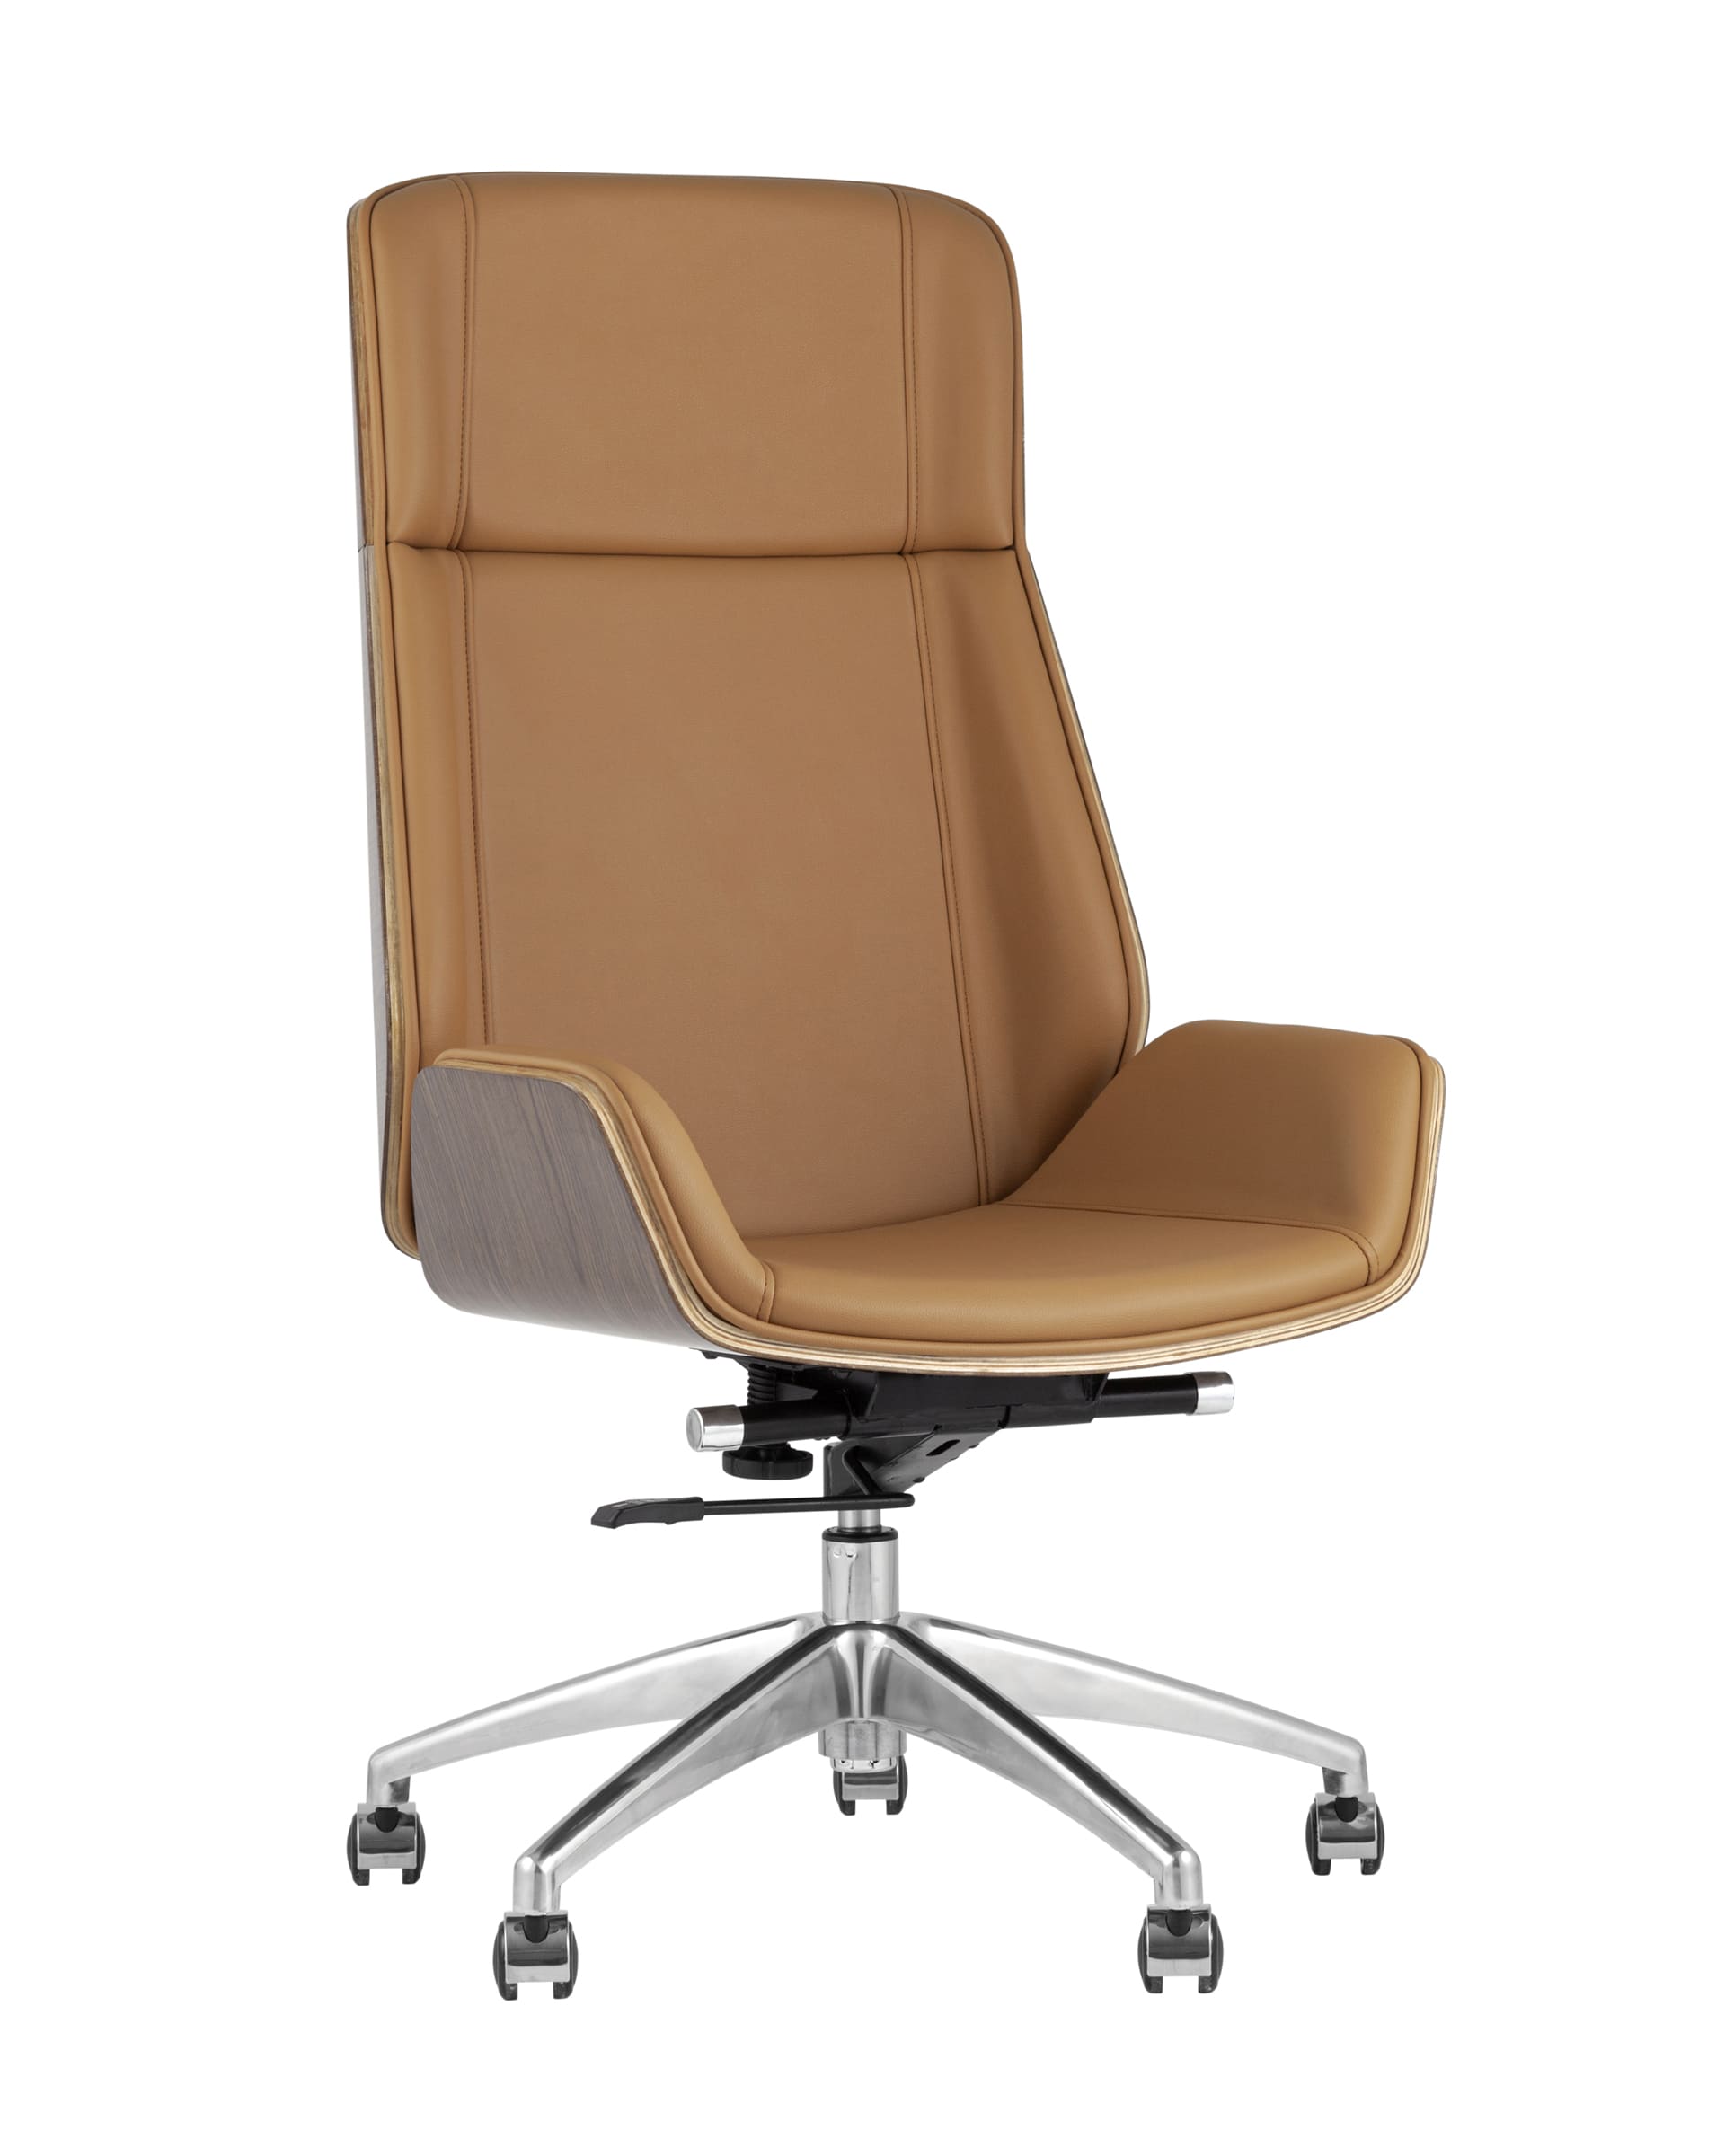 Компьютерное кресло TopChairs Crown офисное для руководителя коричневое, обивка экокожа, металлический каркас